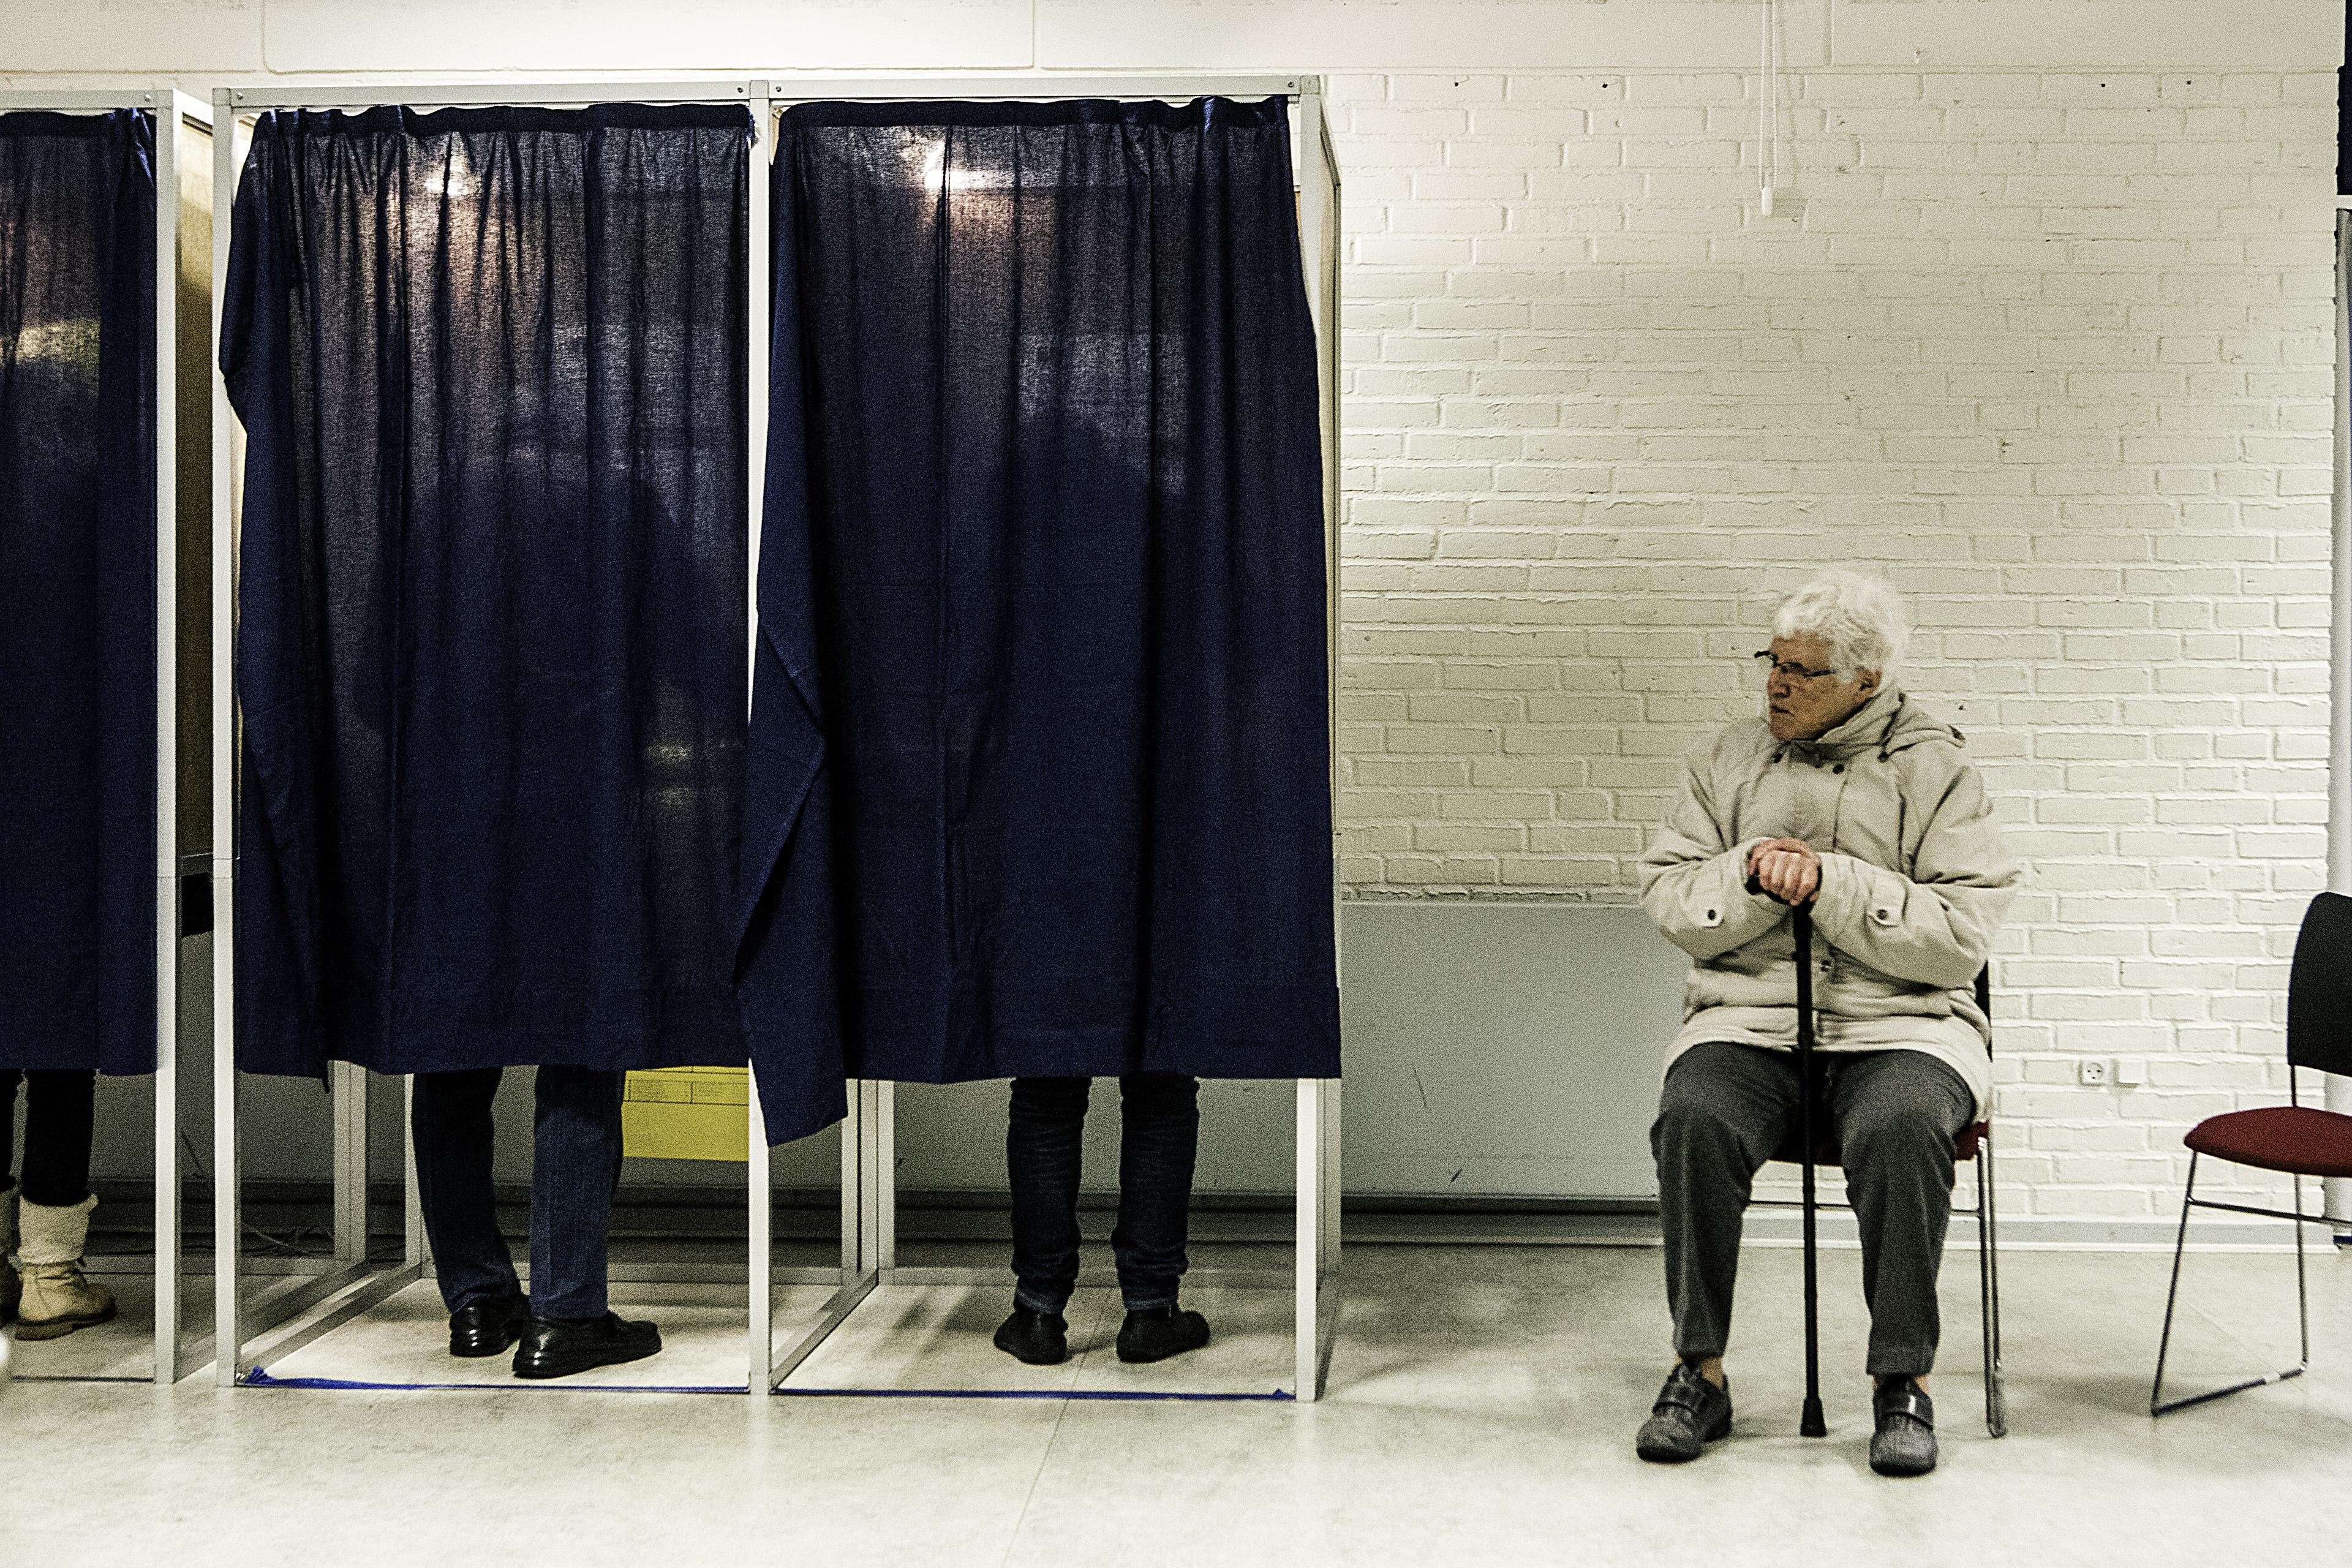  Flere praktiske ting er ændret i forhold til seneste kommunalvalg; blandt andet åbner valgstederne tidligere.
Foto: Peter Klint / Ritzau Foto